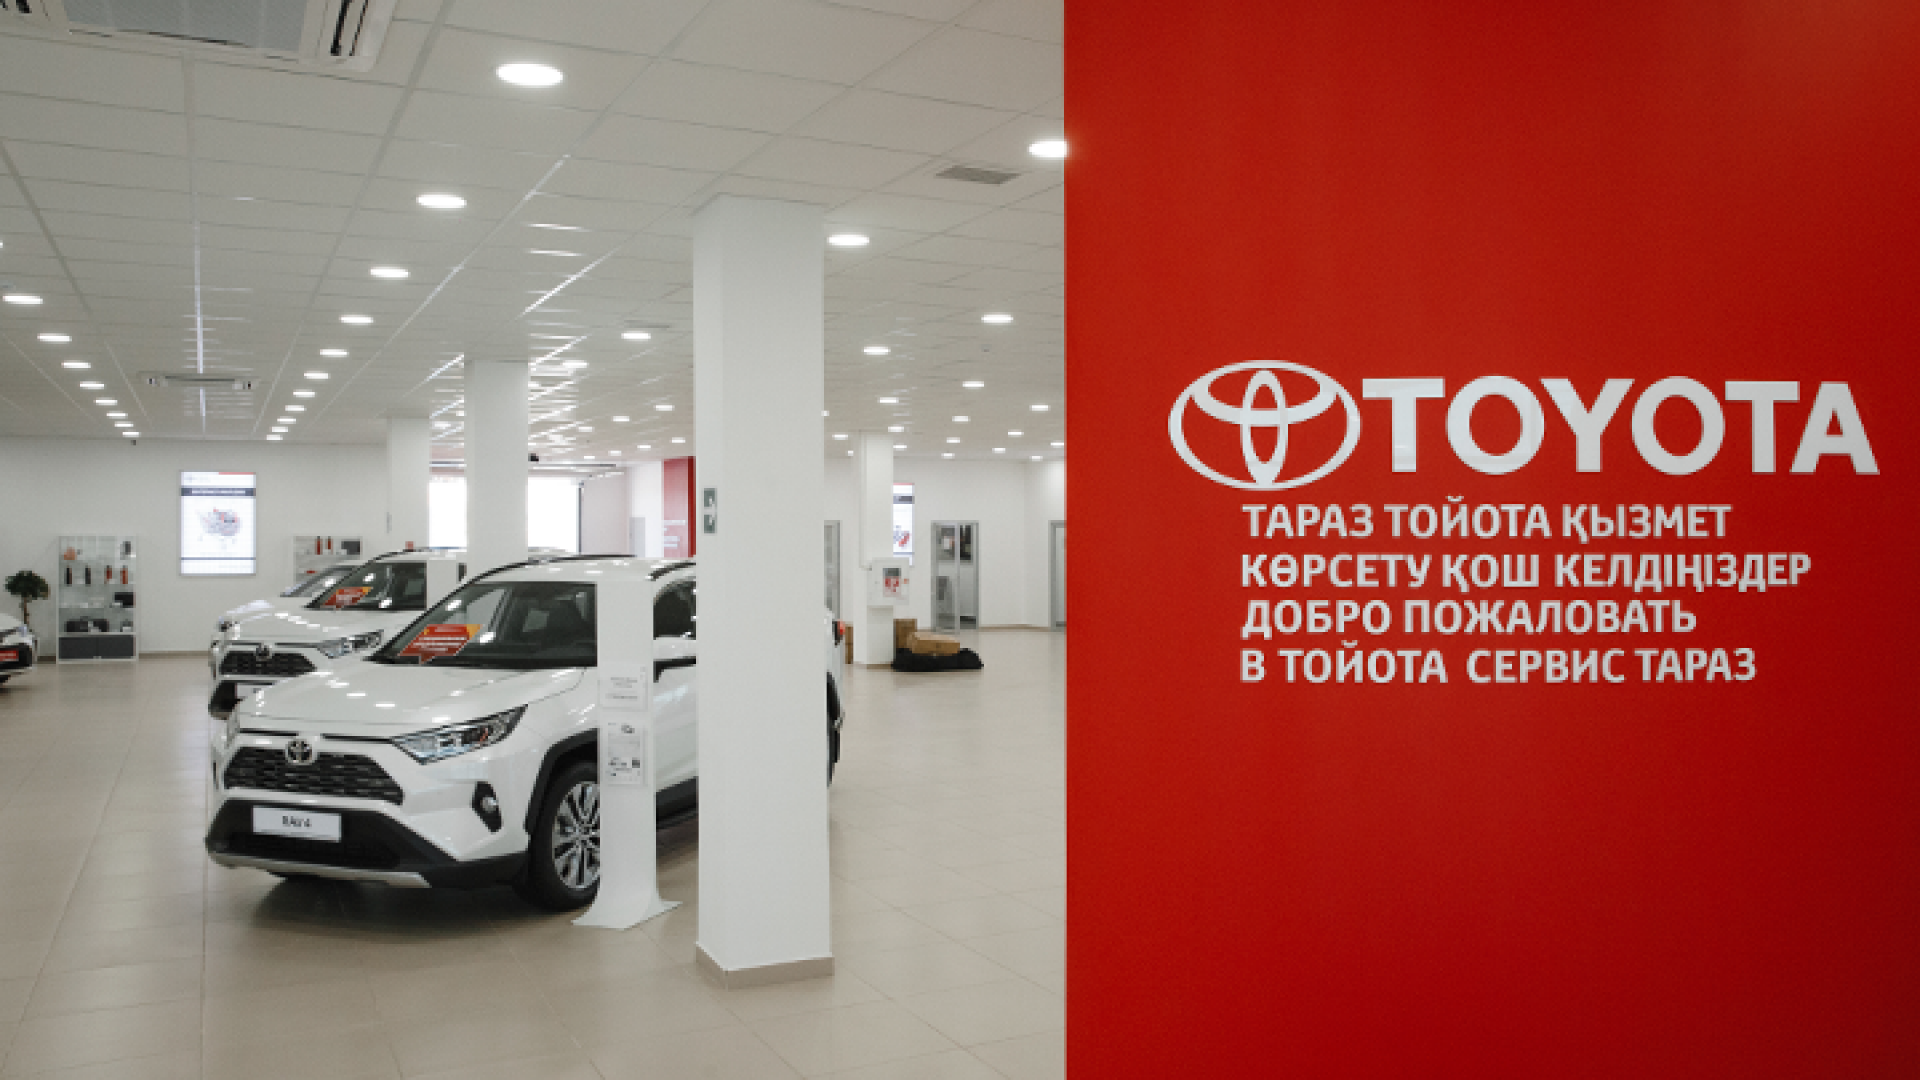 Toyota открыла новое понимание качества